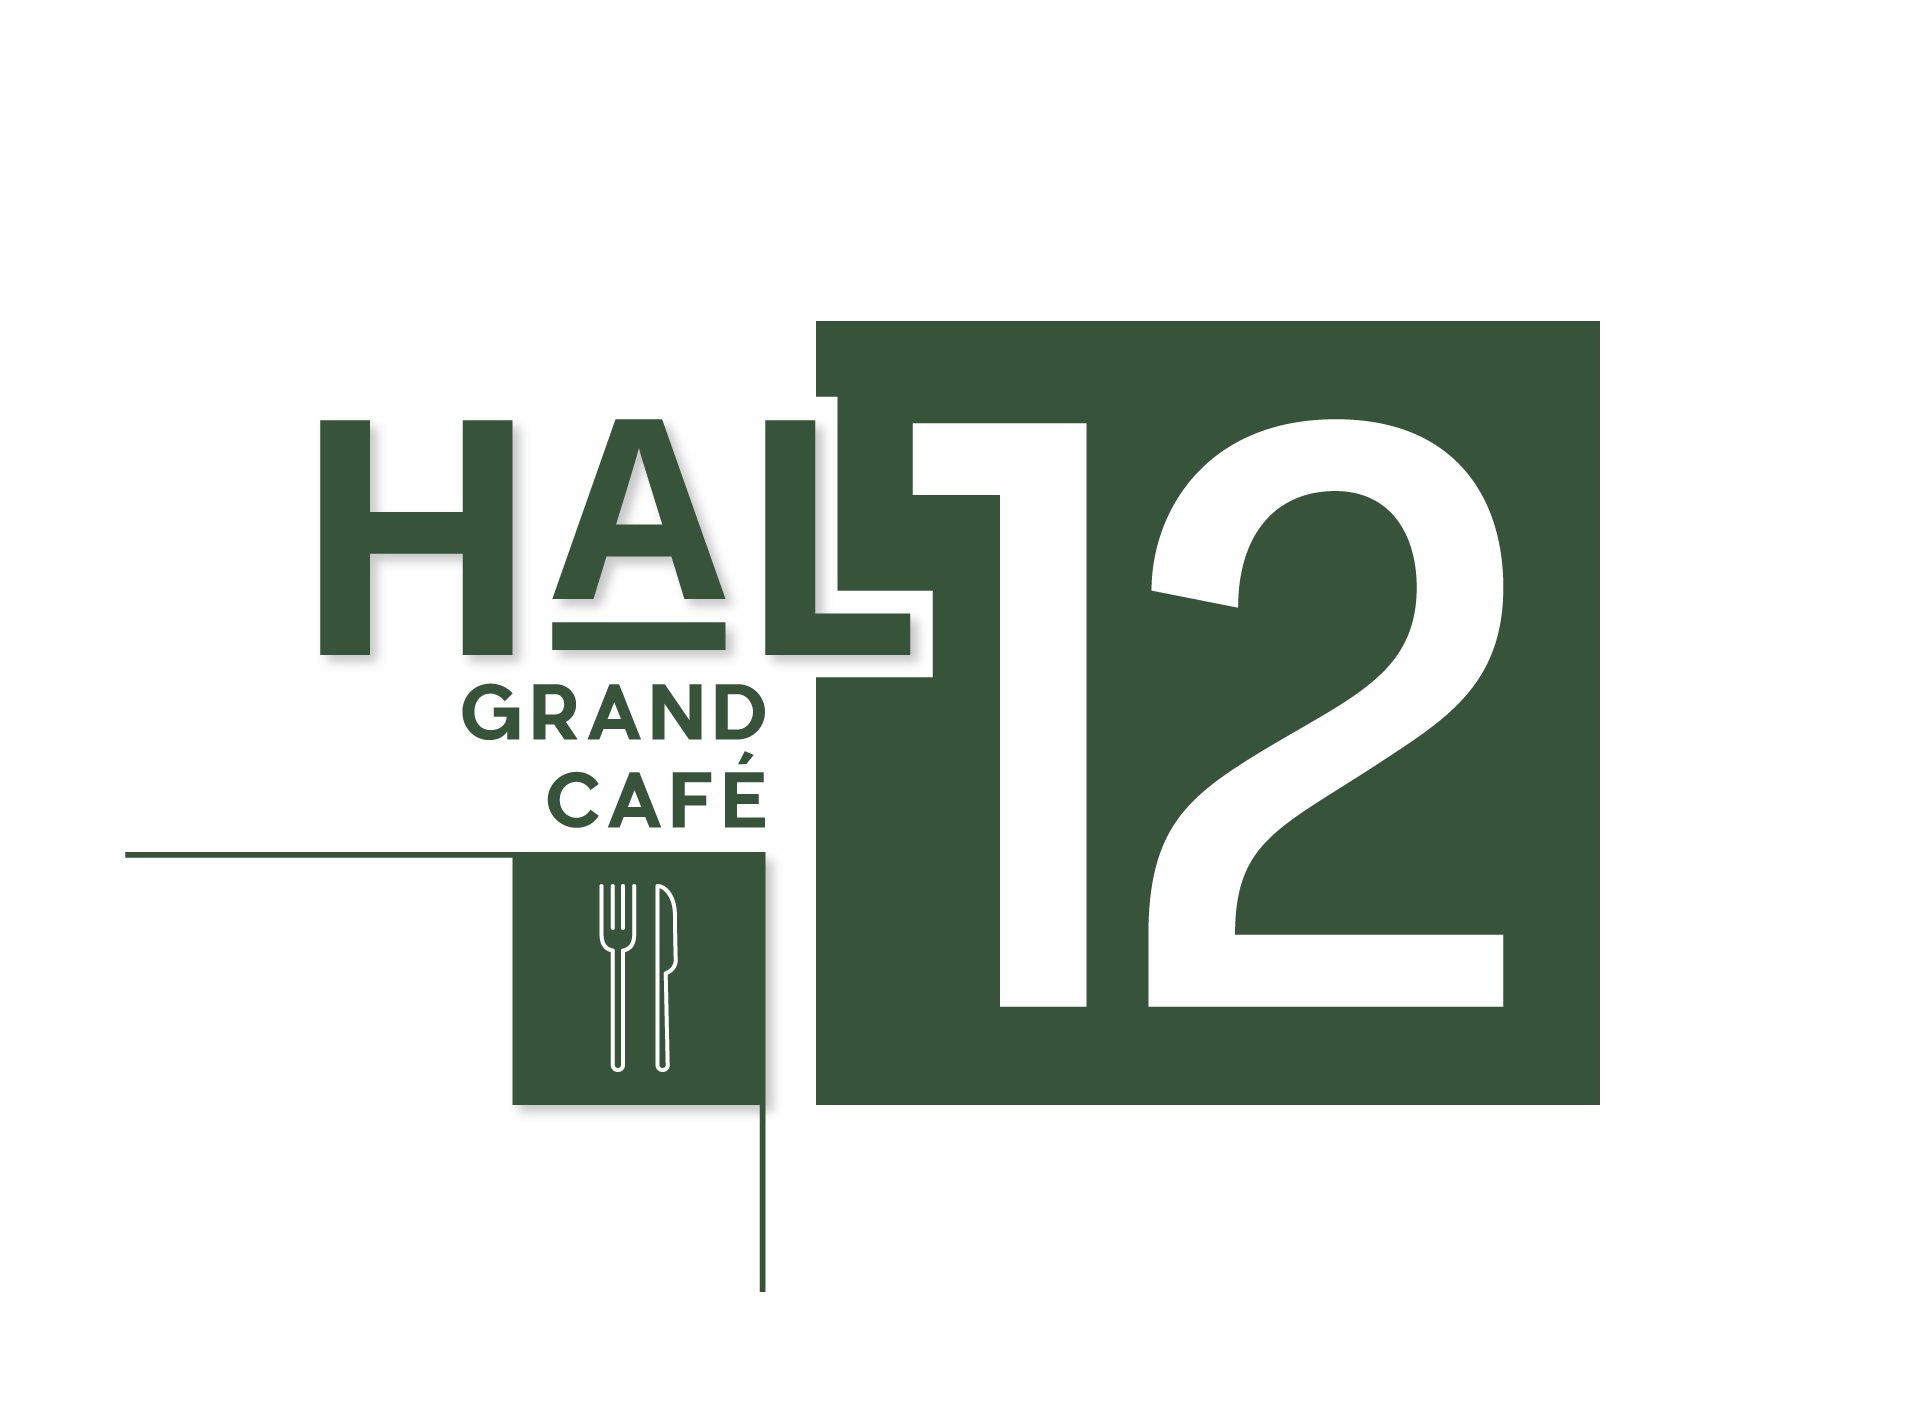 Grand Cafe Hal12